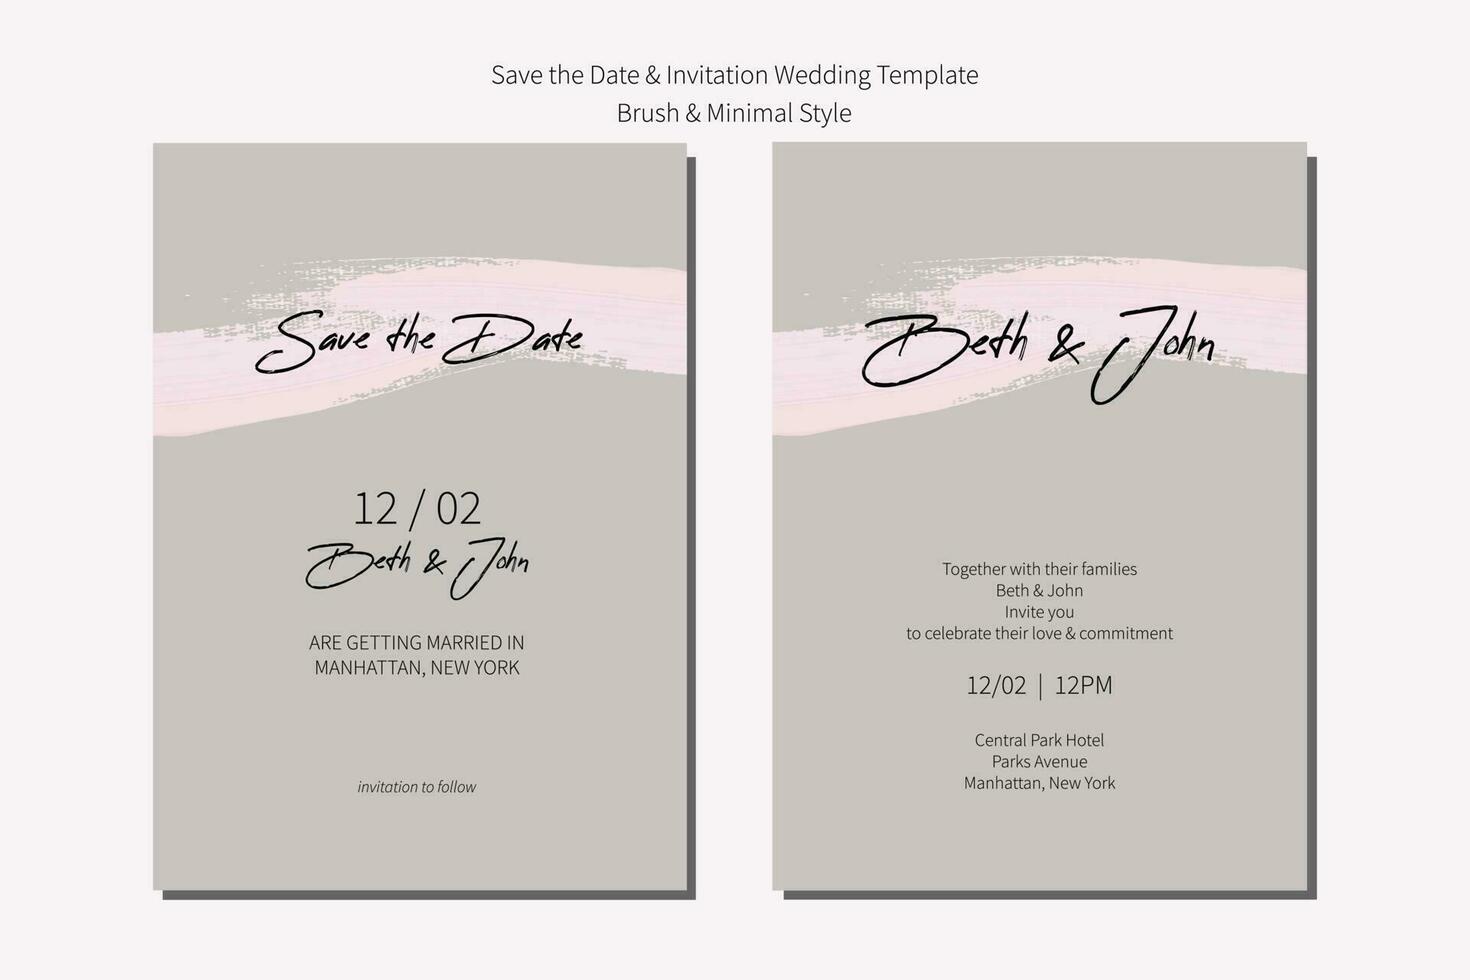 nozze invito e Salva il Data carta modello con spazzola grigio neutro e minimalismo. vettore